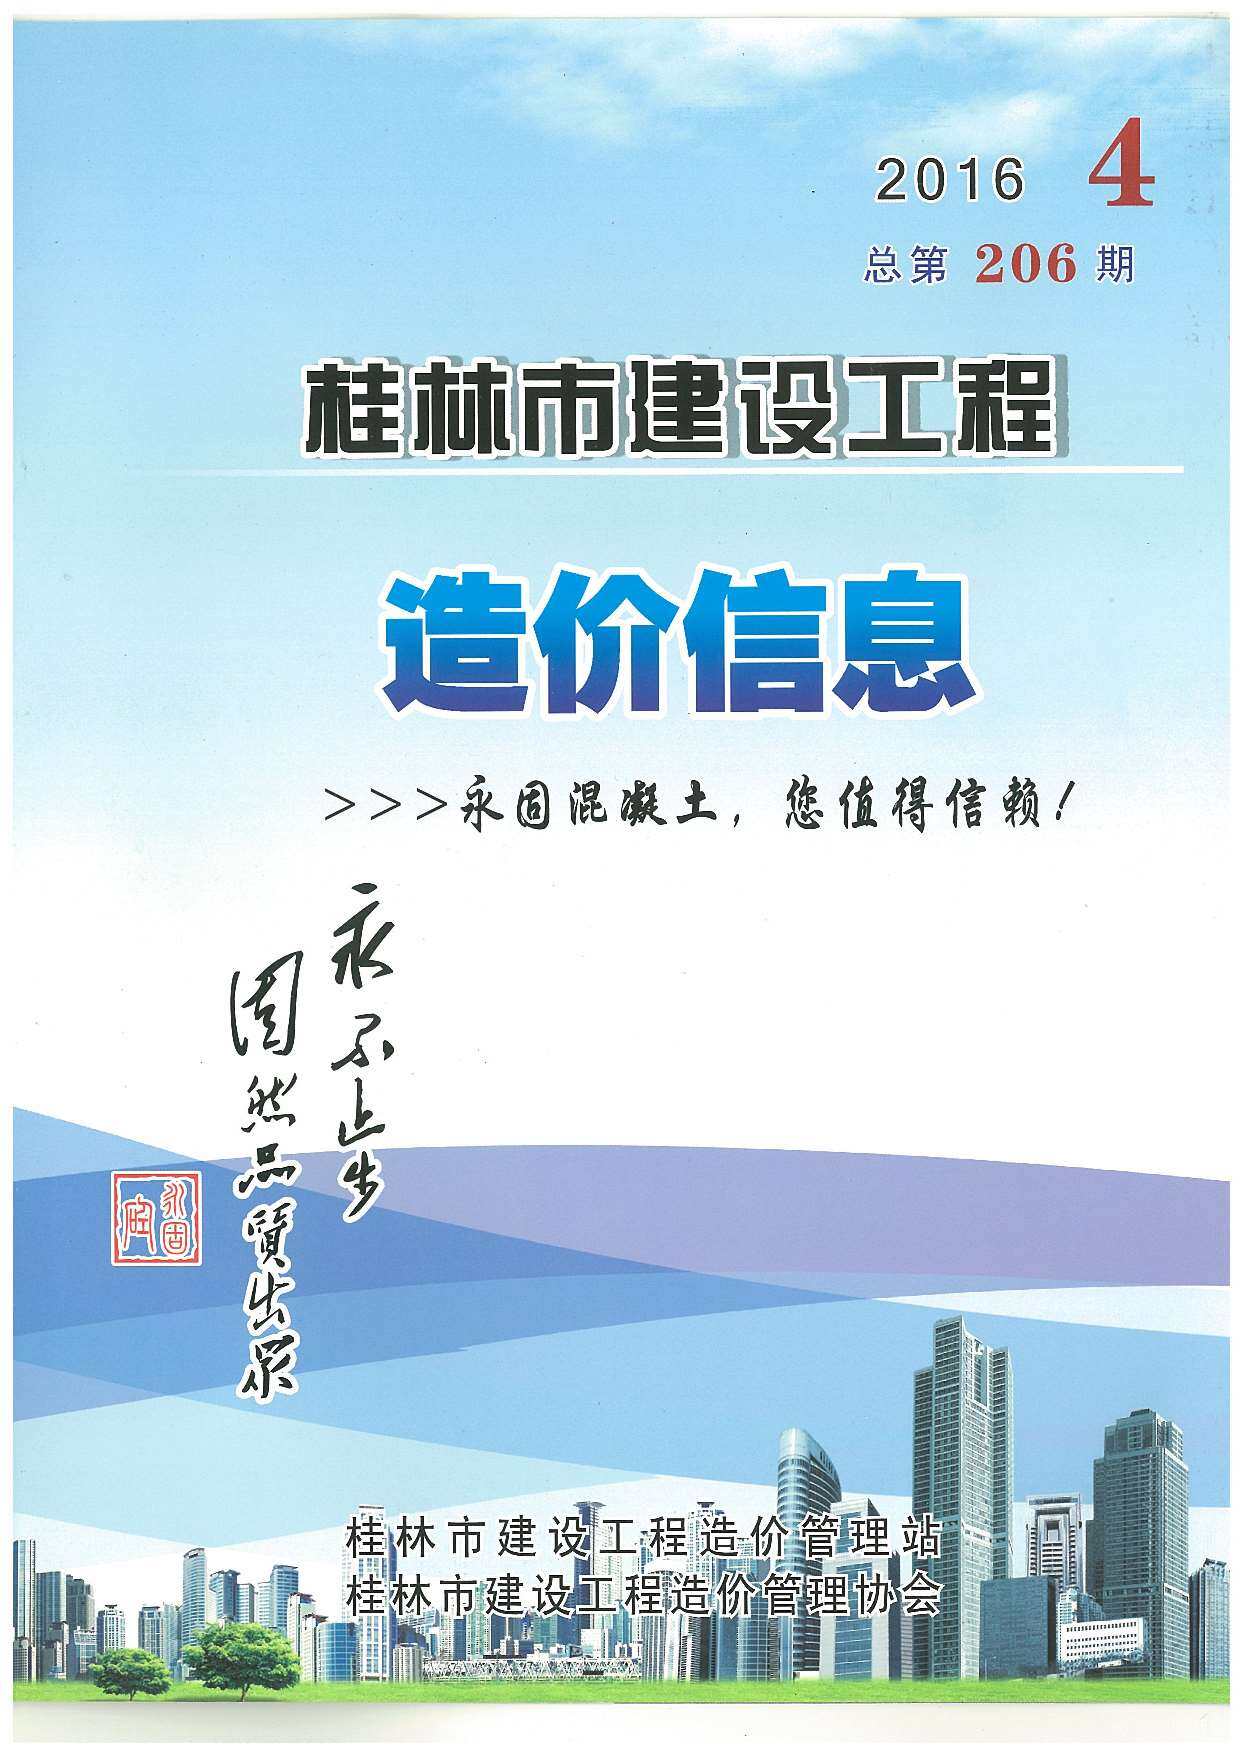 桂林市2016年4月工程造价信息期刊